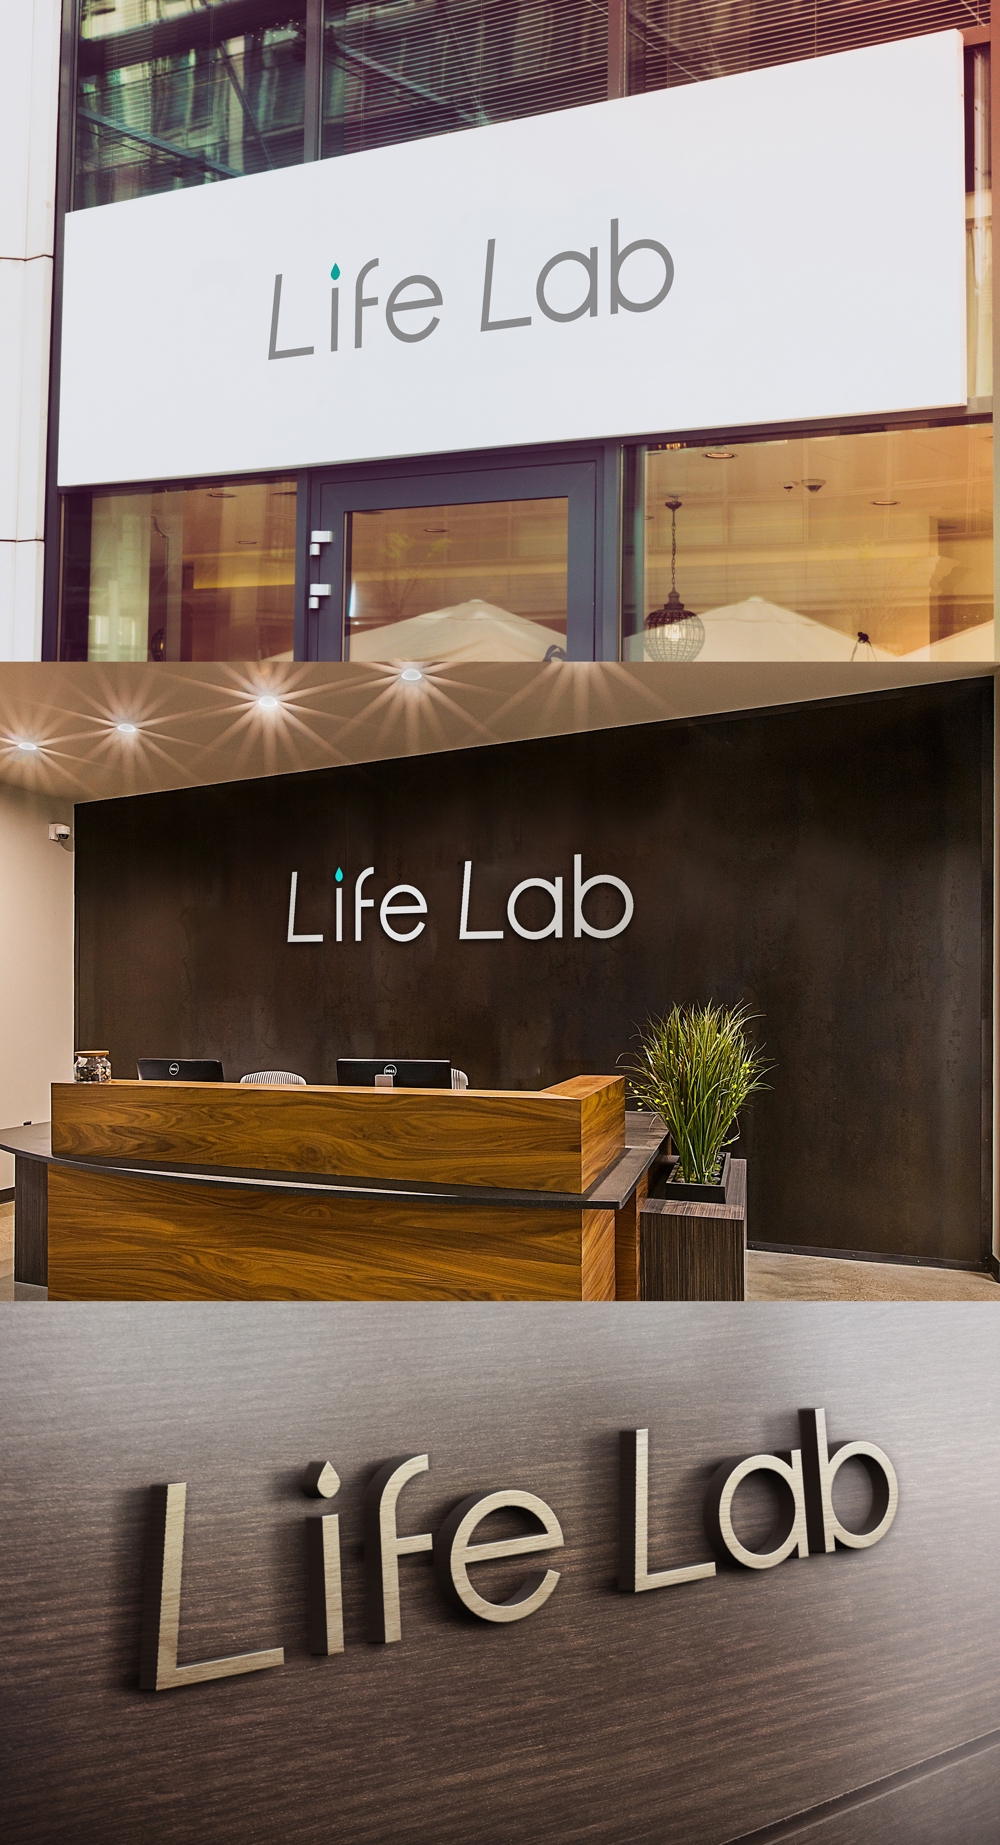 格闘技スタジオ「Life Lab」のロゴ作成